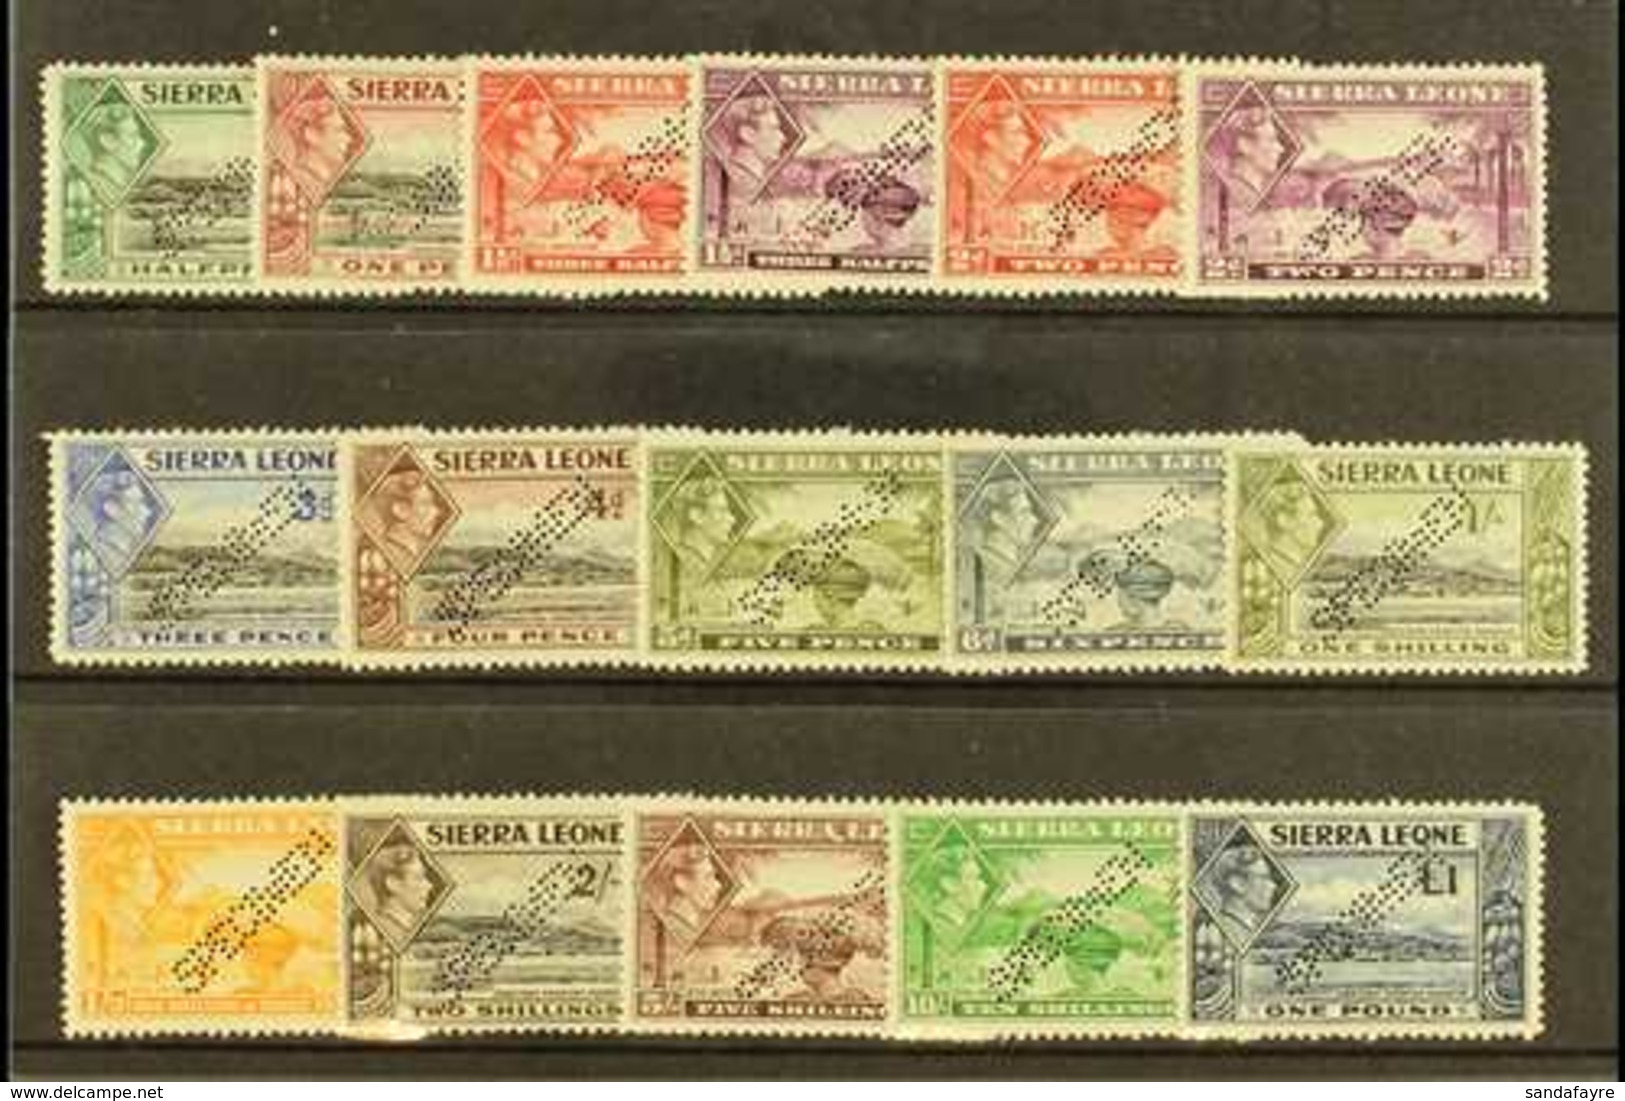 1938  Geo VI Set Complete, Perforated "Specimen", SG 188s/200s, Very Fine Mint, Large Part Og. Scarce Set. (16 Stamps) F - Sierra Leone (...-1960)